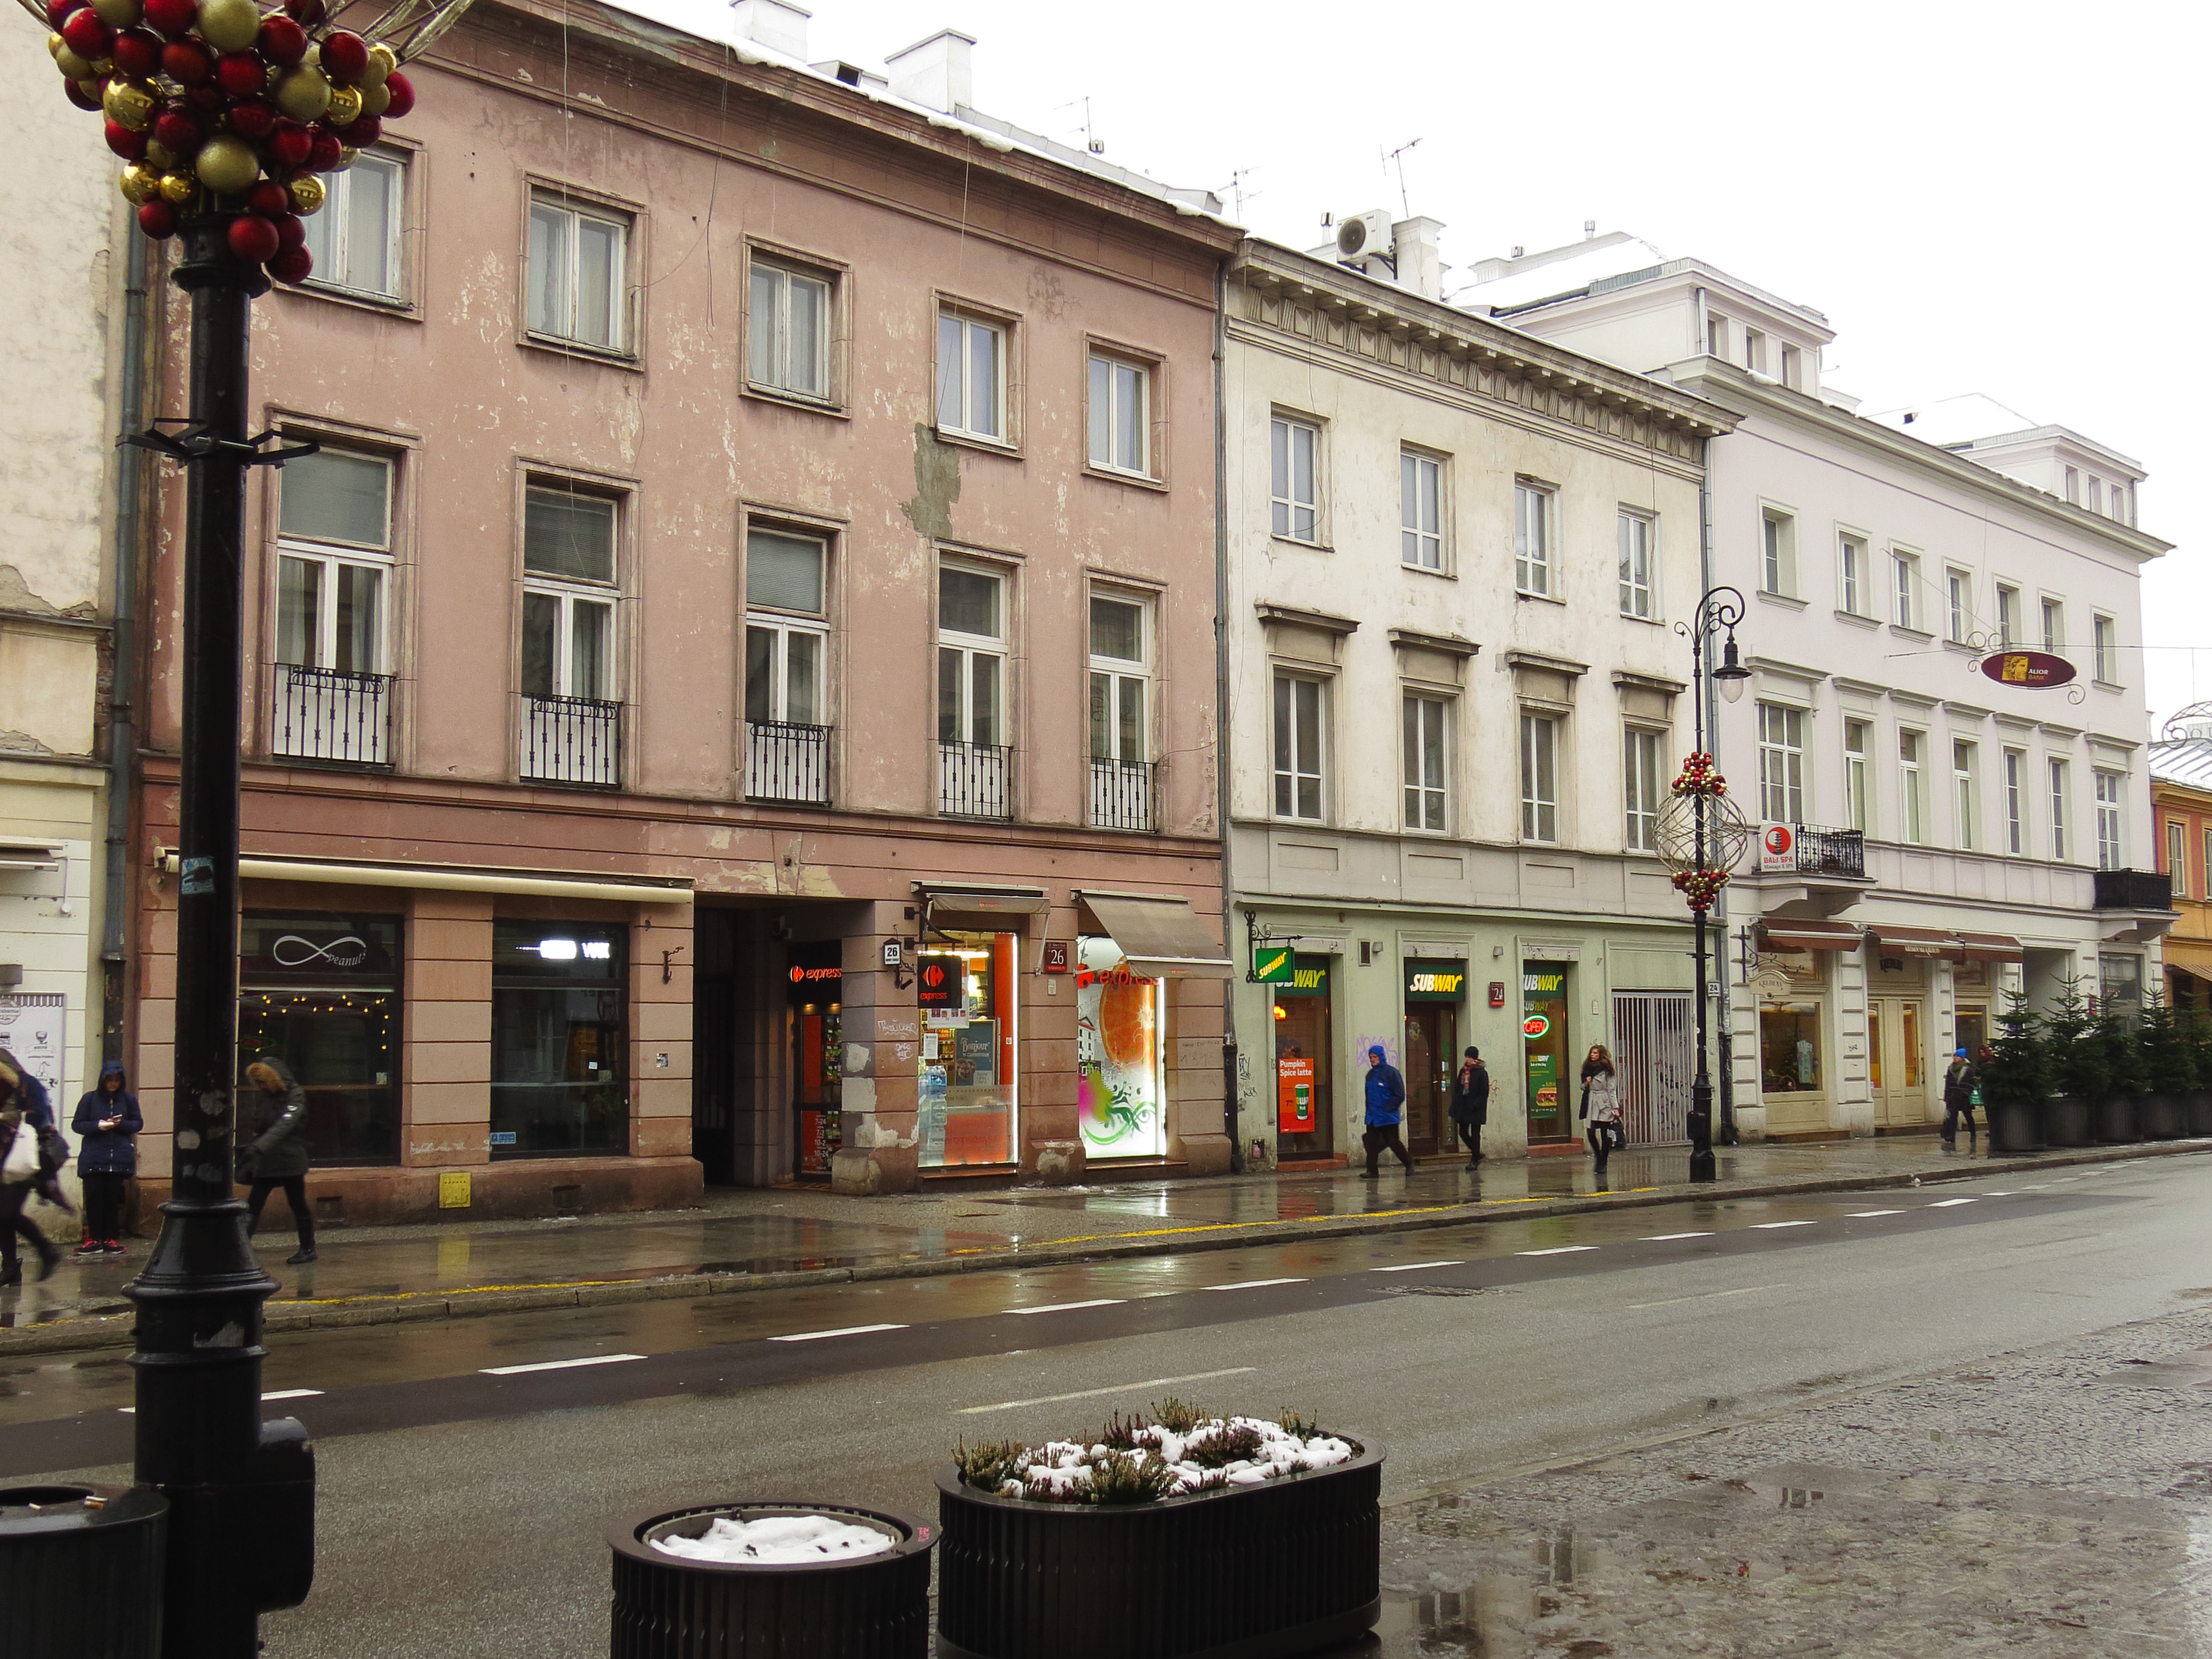 File:Nowy Świat 22-26 Warszawa.jpg - Wikimedia Commons